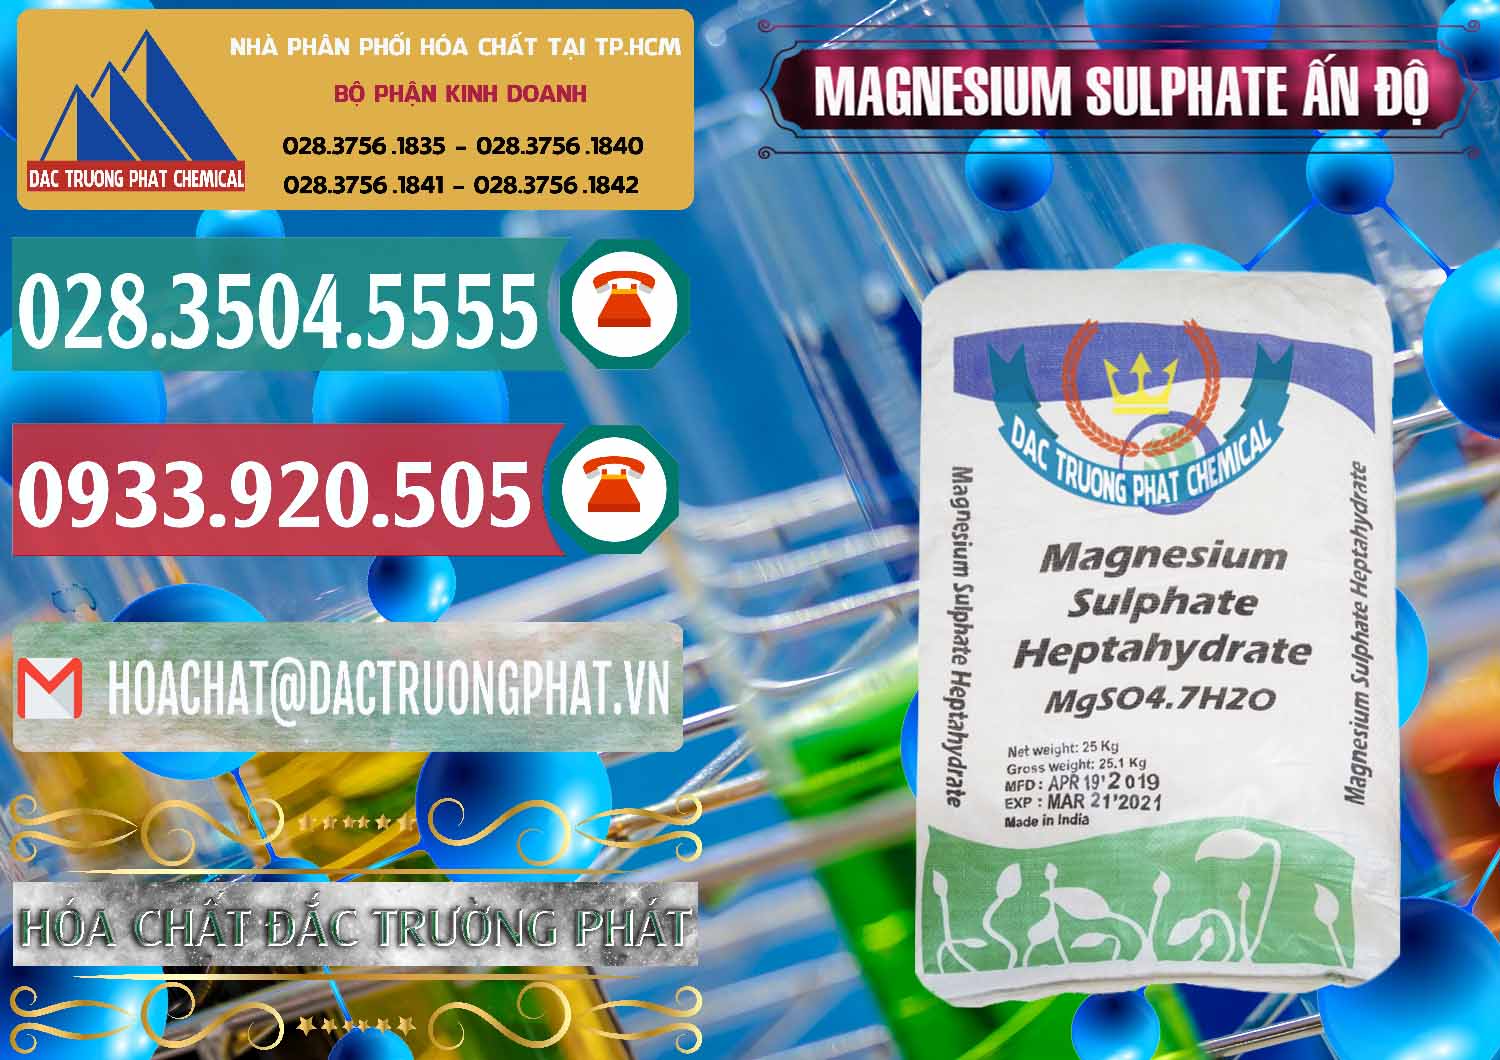 Công ty cung cấp & bán MGSO4.7H2O – Magnesium Sulphate Heptahydrate Ấn Độ India - 0362 - Chuyên cung cấp và phân phối hóa chất tại TP.HCM - muabanhoachat.vn